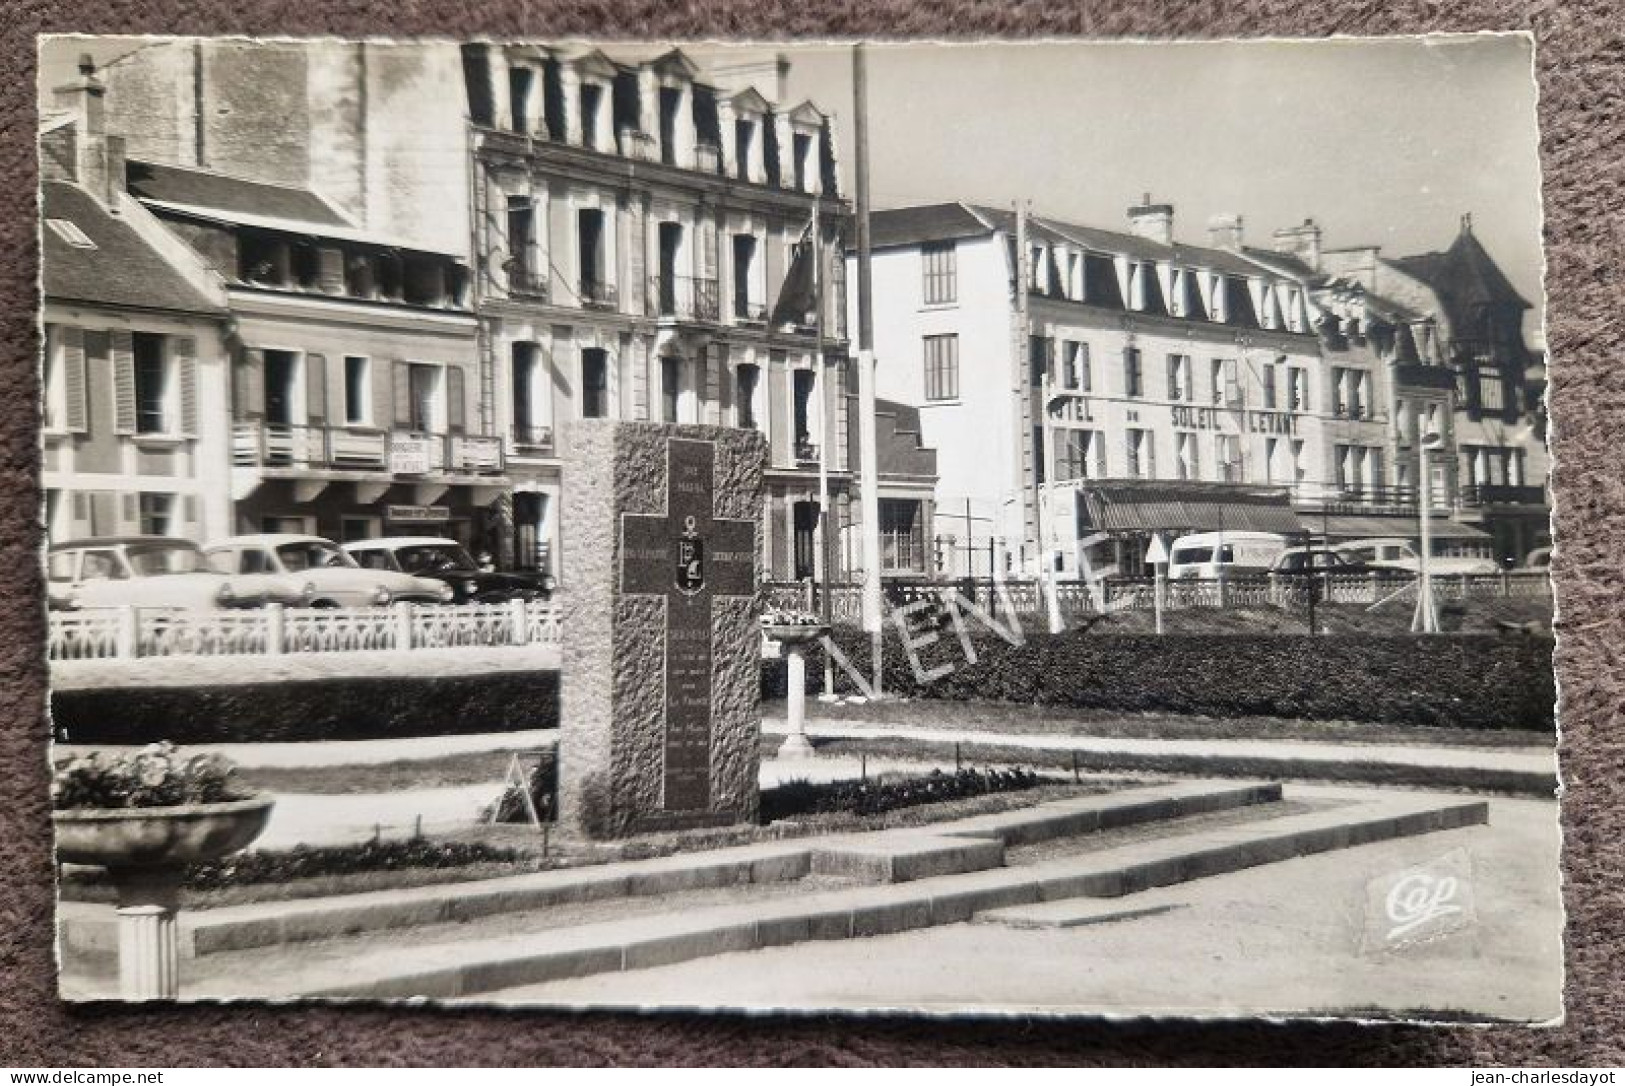 Carte Postale LUC-SUR-MER : Monument De La Libération - Luc Sur Mer